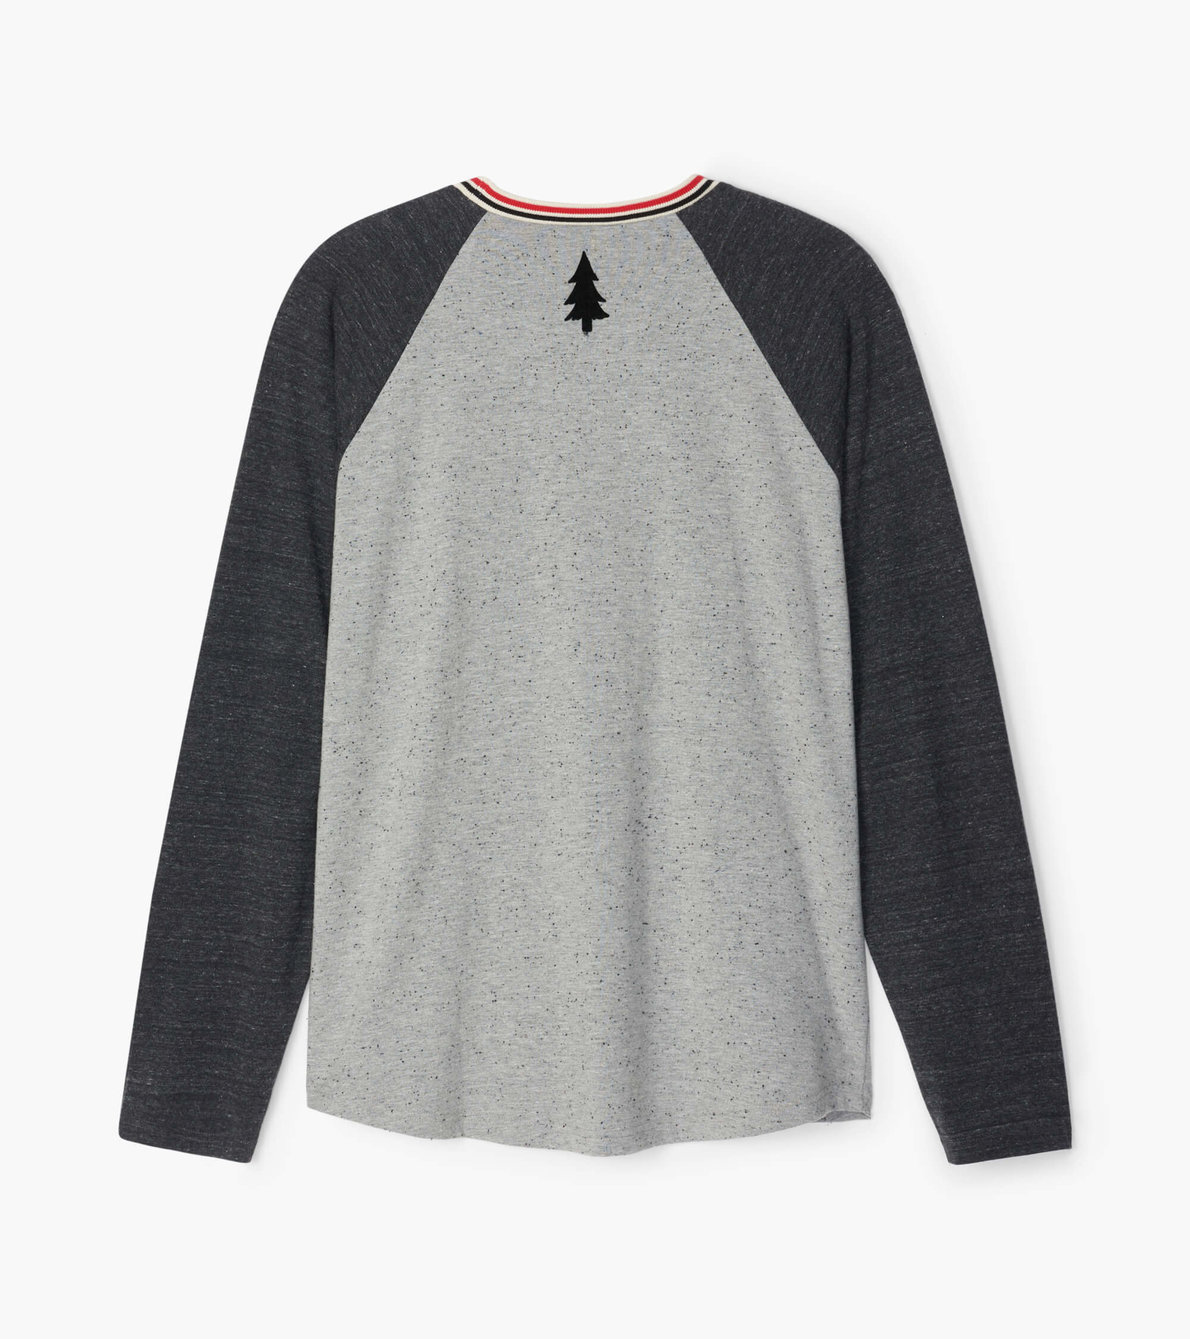 Agrandir l'image de T-shirt à manches longues raglan pour enfant, collection Heritage – Orignal sur gris anthracite